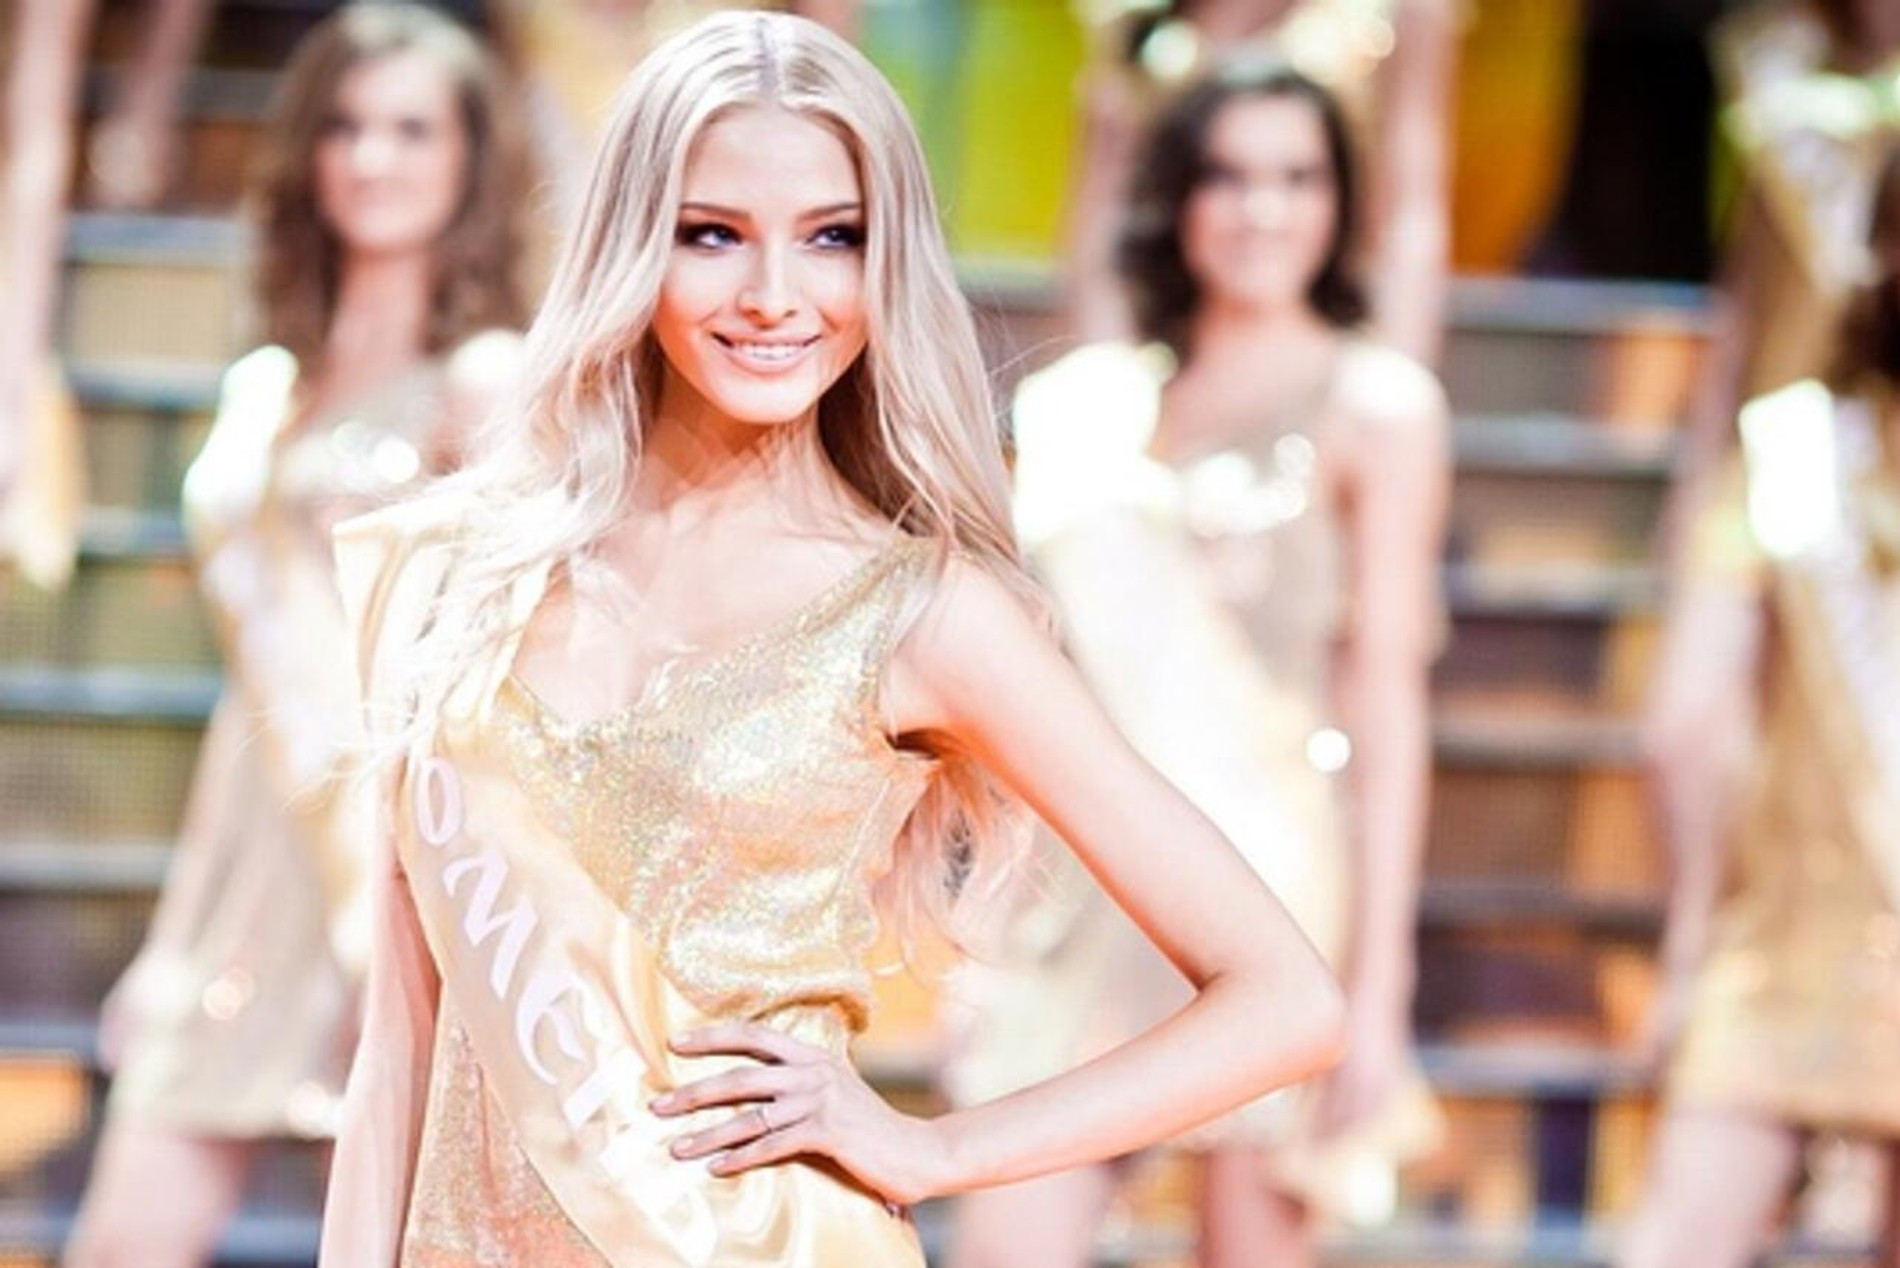 Алена Шишкова на конкурсе «Мисс Россия — 2012»
Фото: Инстаграм (запрещен в РФ) 